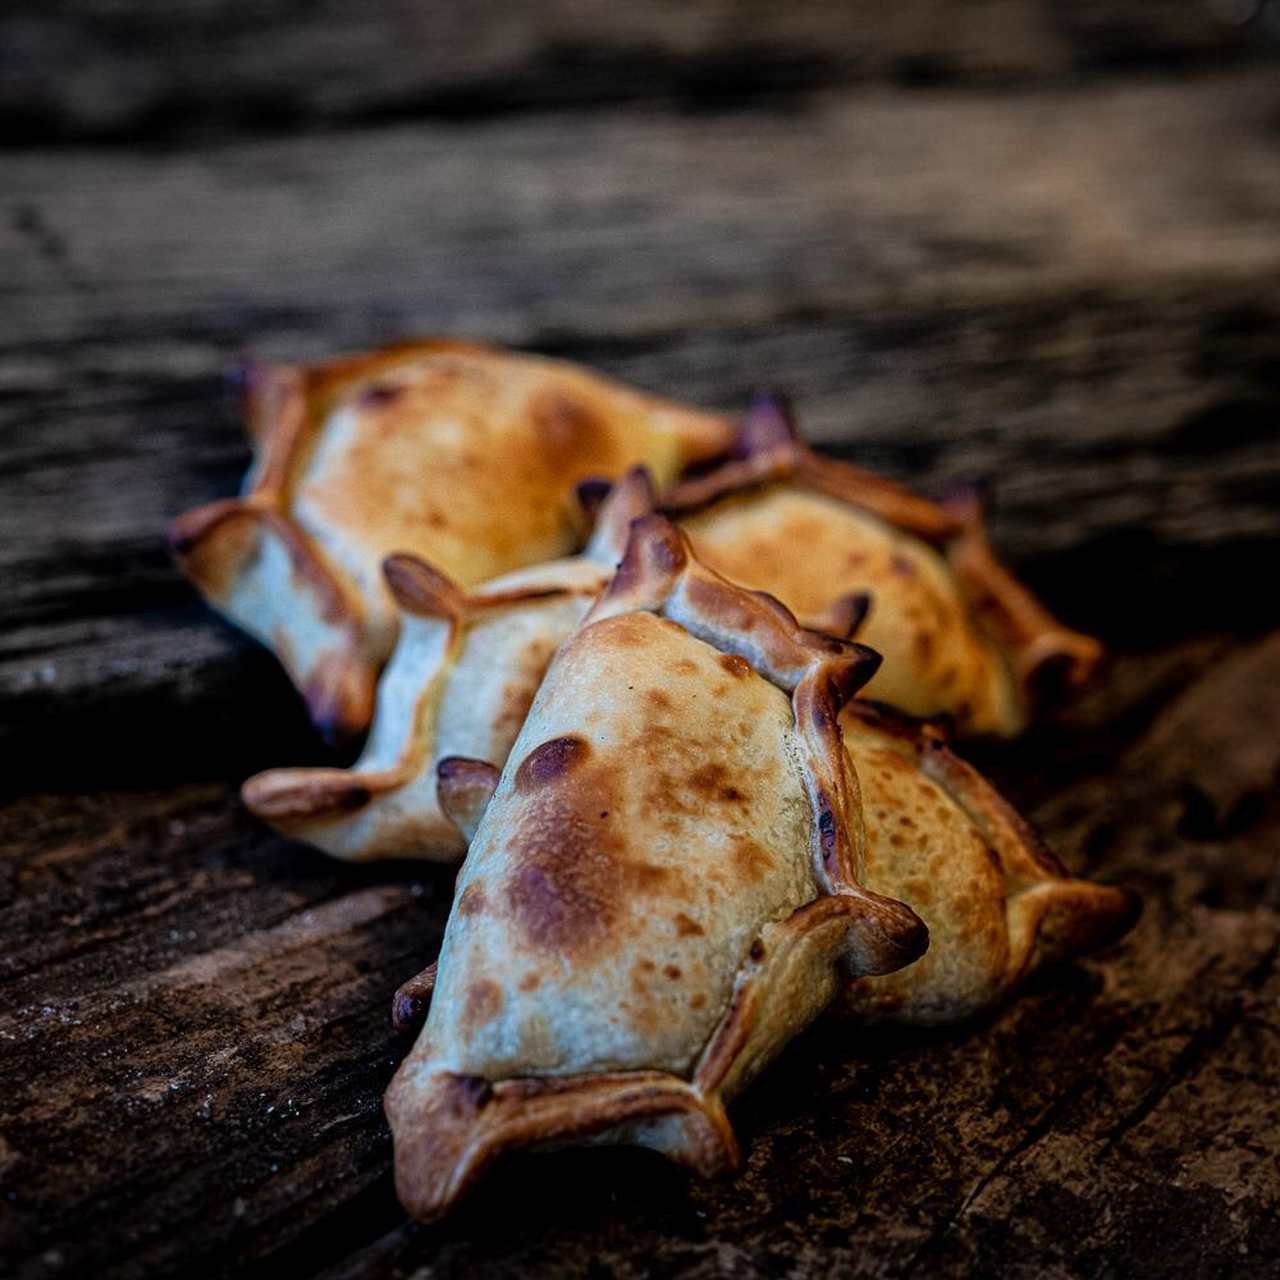 Empanadas argentinas